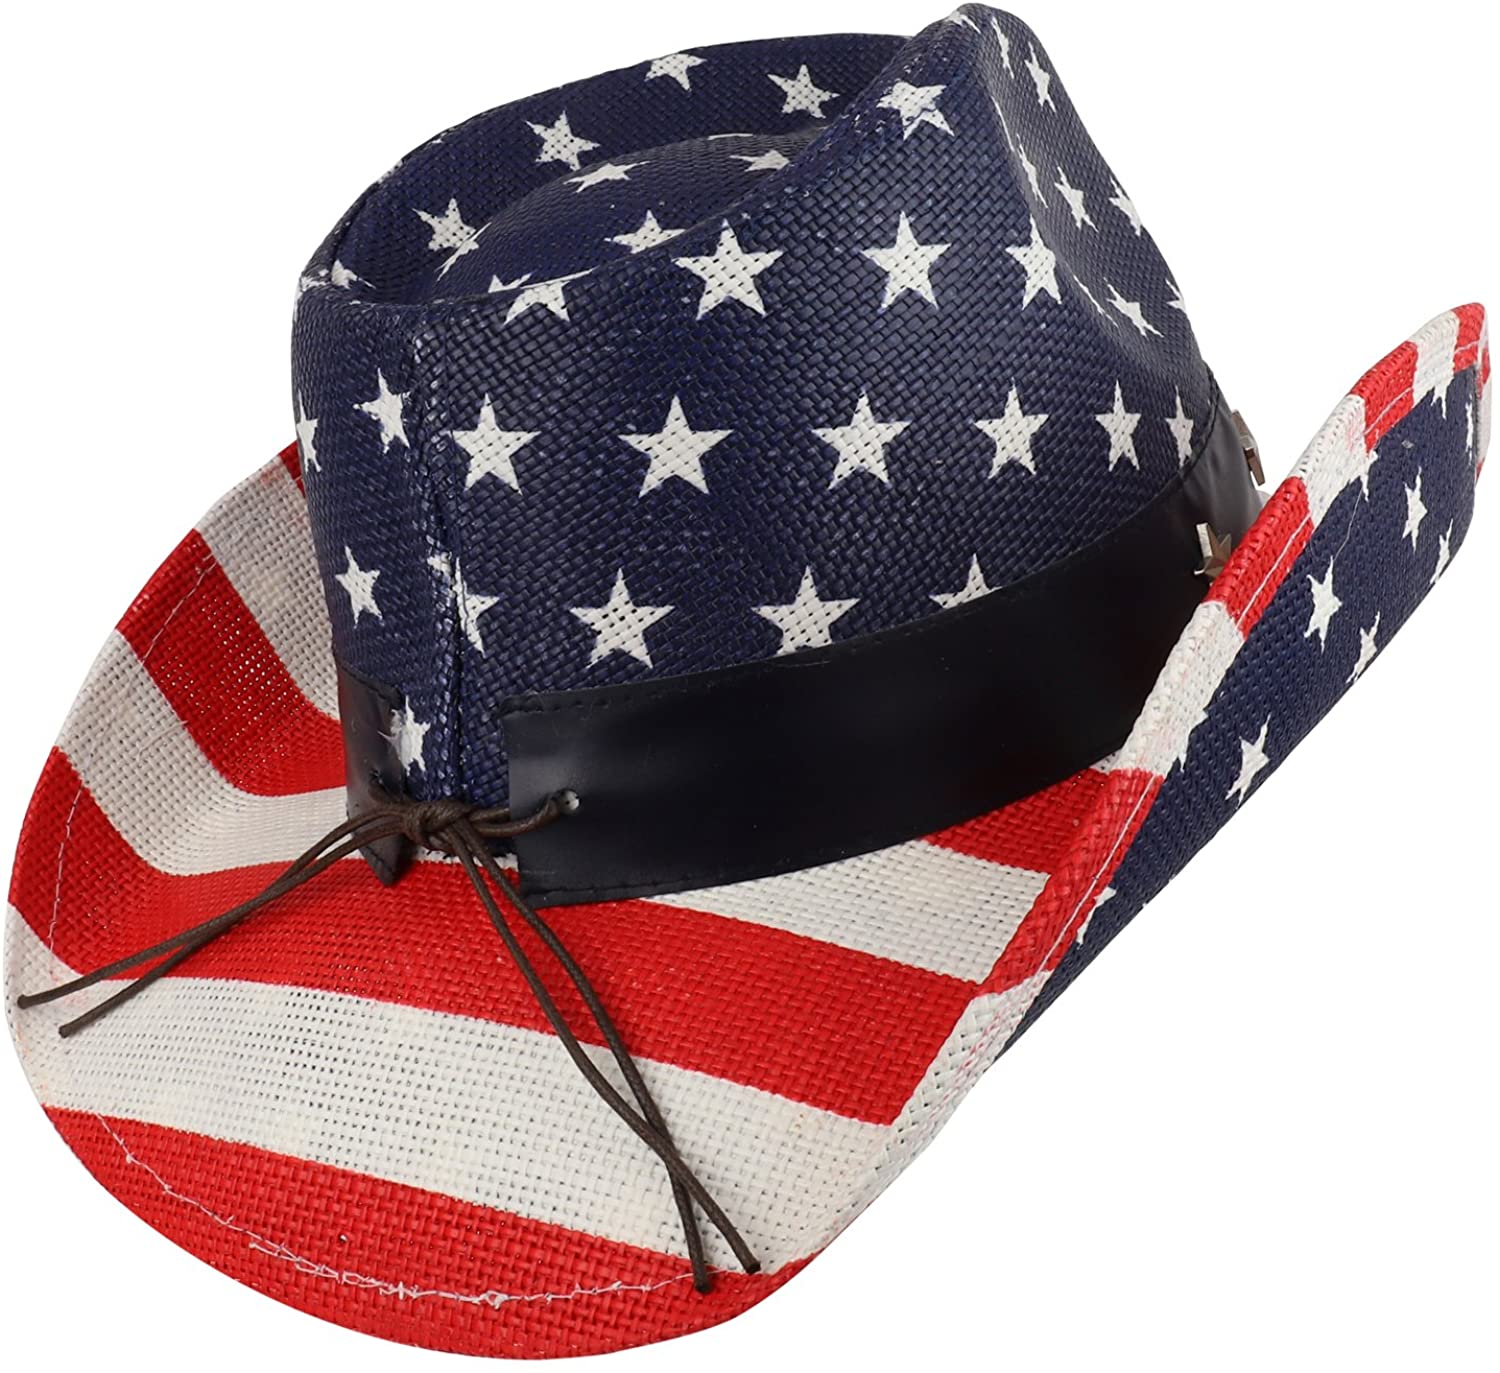 Armycrew American Flag Toyo Western Cowgirl Cowboy Hat - Armycrew.com